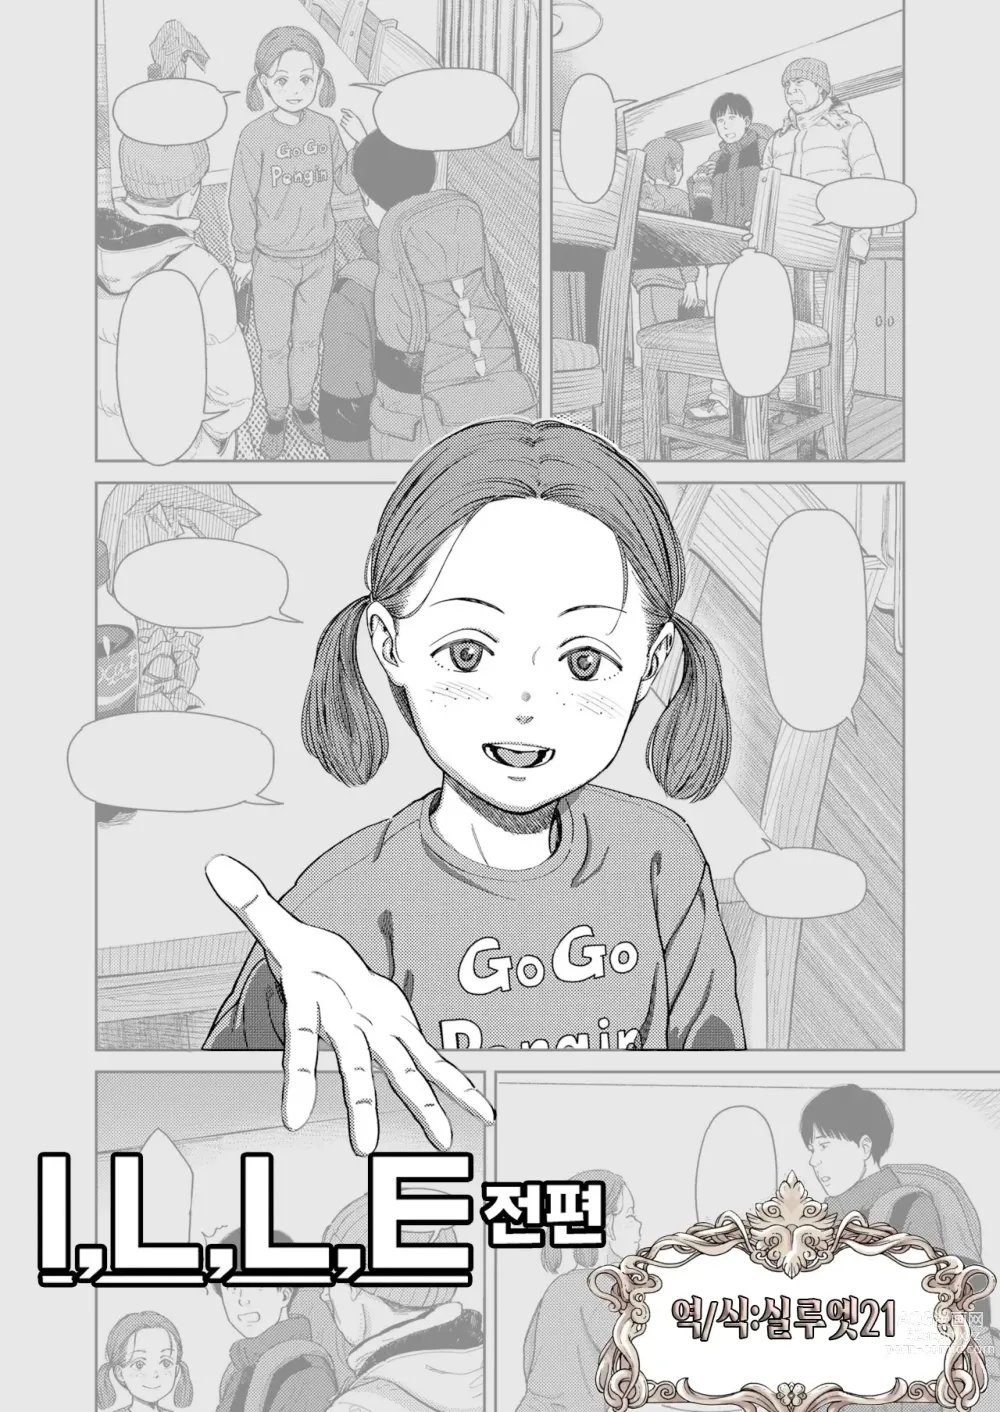 Page 1 of manga I,L,L,E 전편